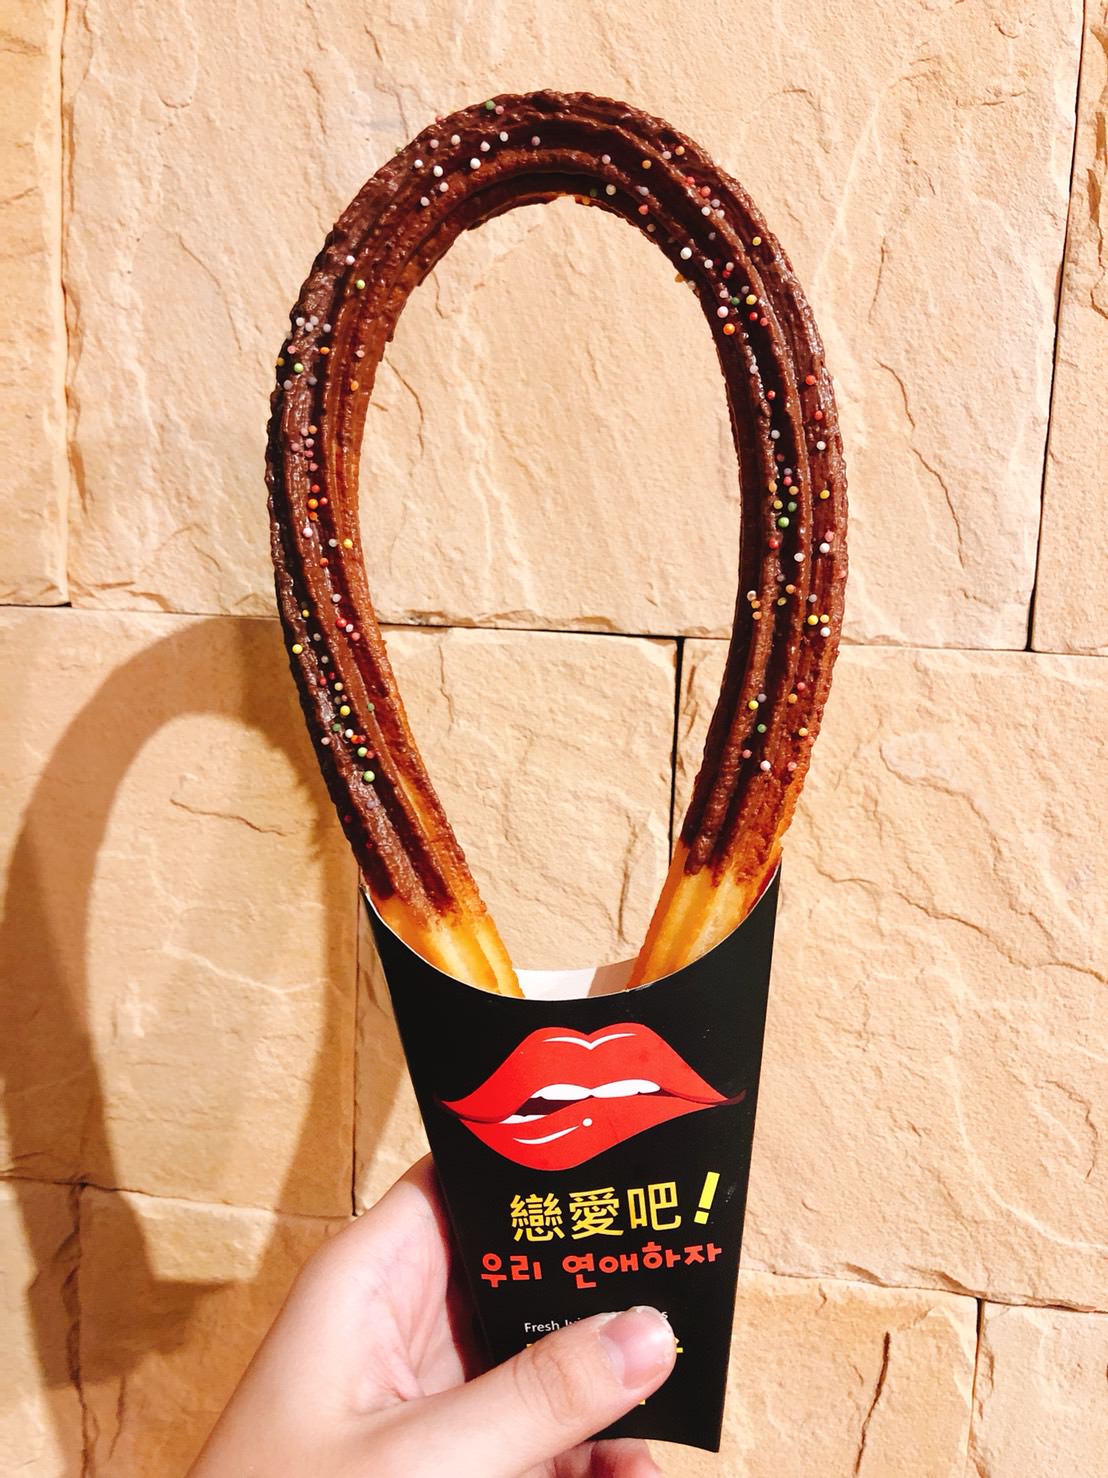 [台北]京站B3散步甜食超人氣推薦 少女心棉花糖吉拿棒與漸層果汁 戀愛吧 LoveJuice